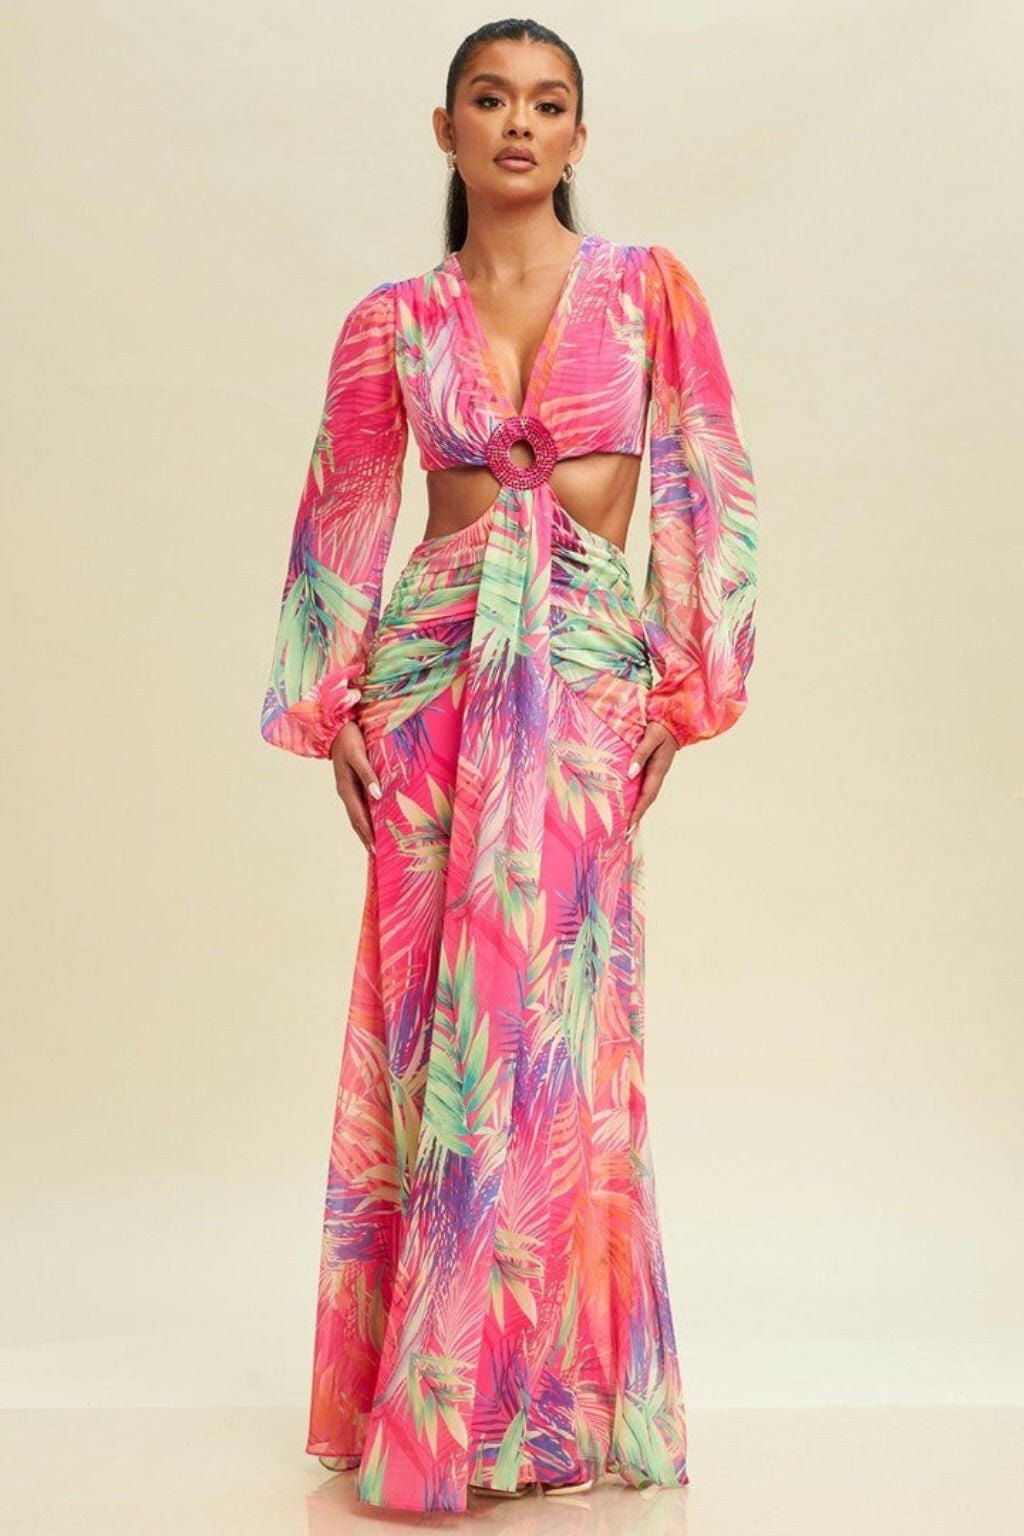 Epicplacess Dress Sunrise Chiffon Floral Maxi Dress - Pink